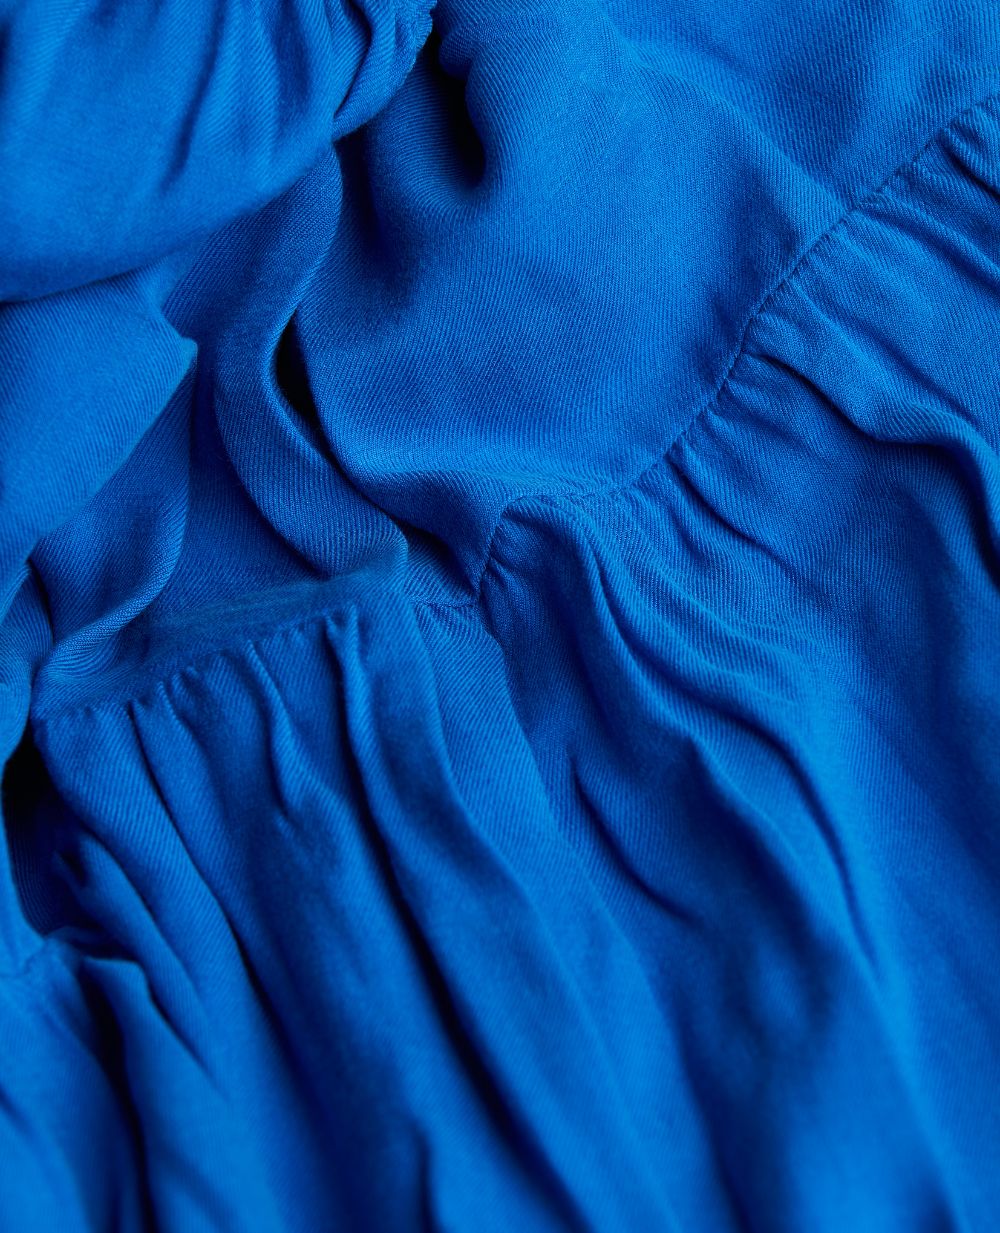 Robe longue de maternité Claudette bleu électrique